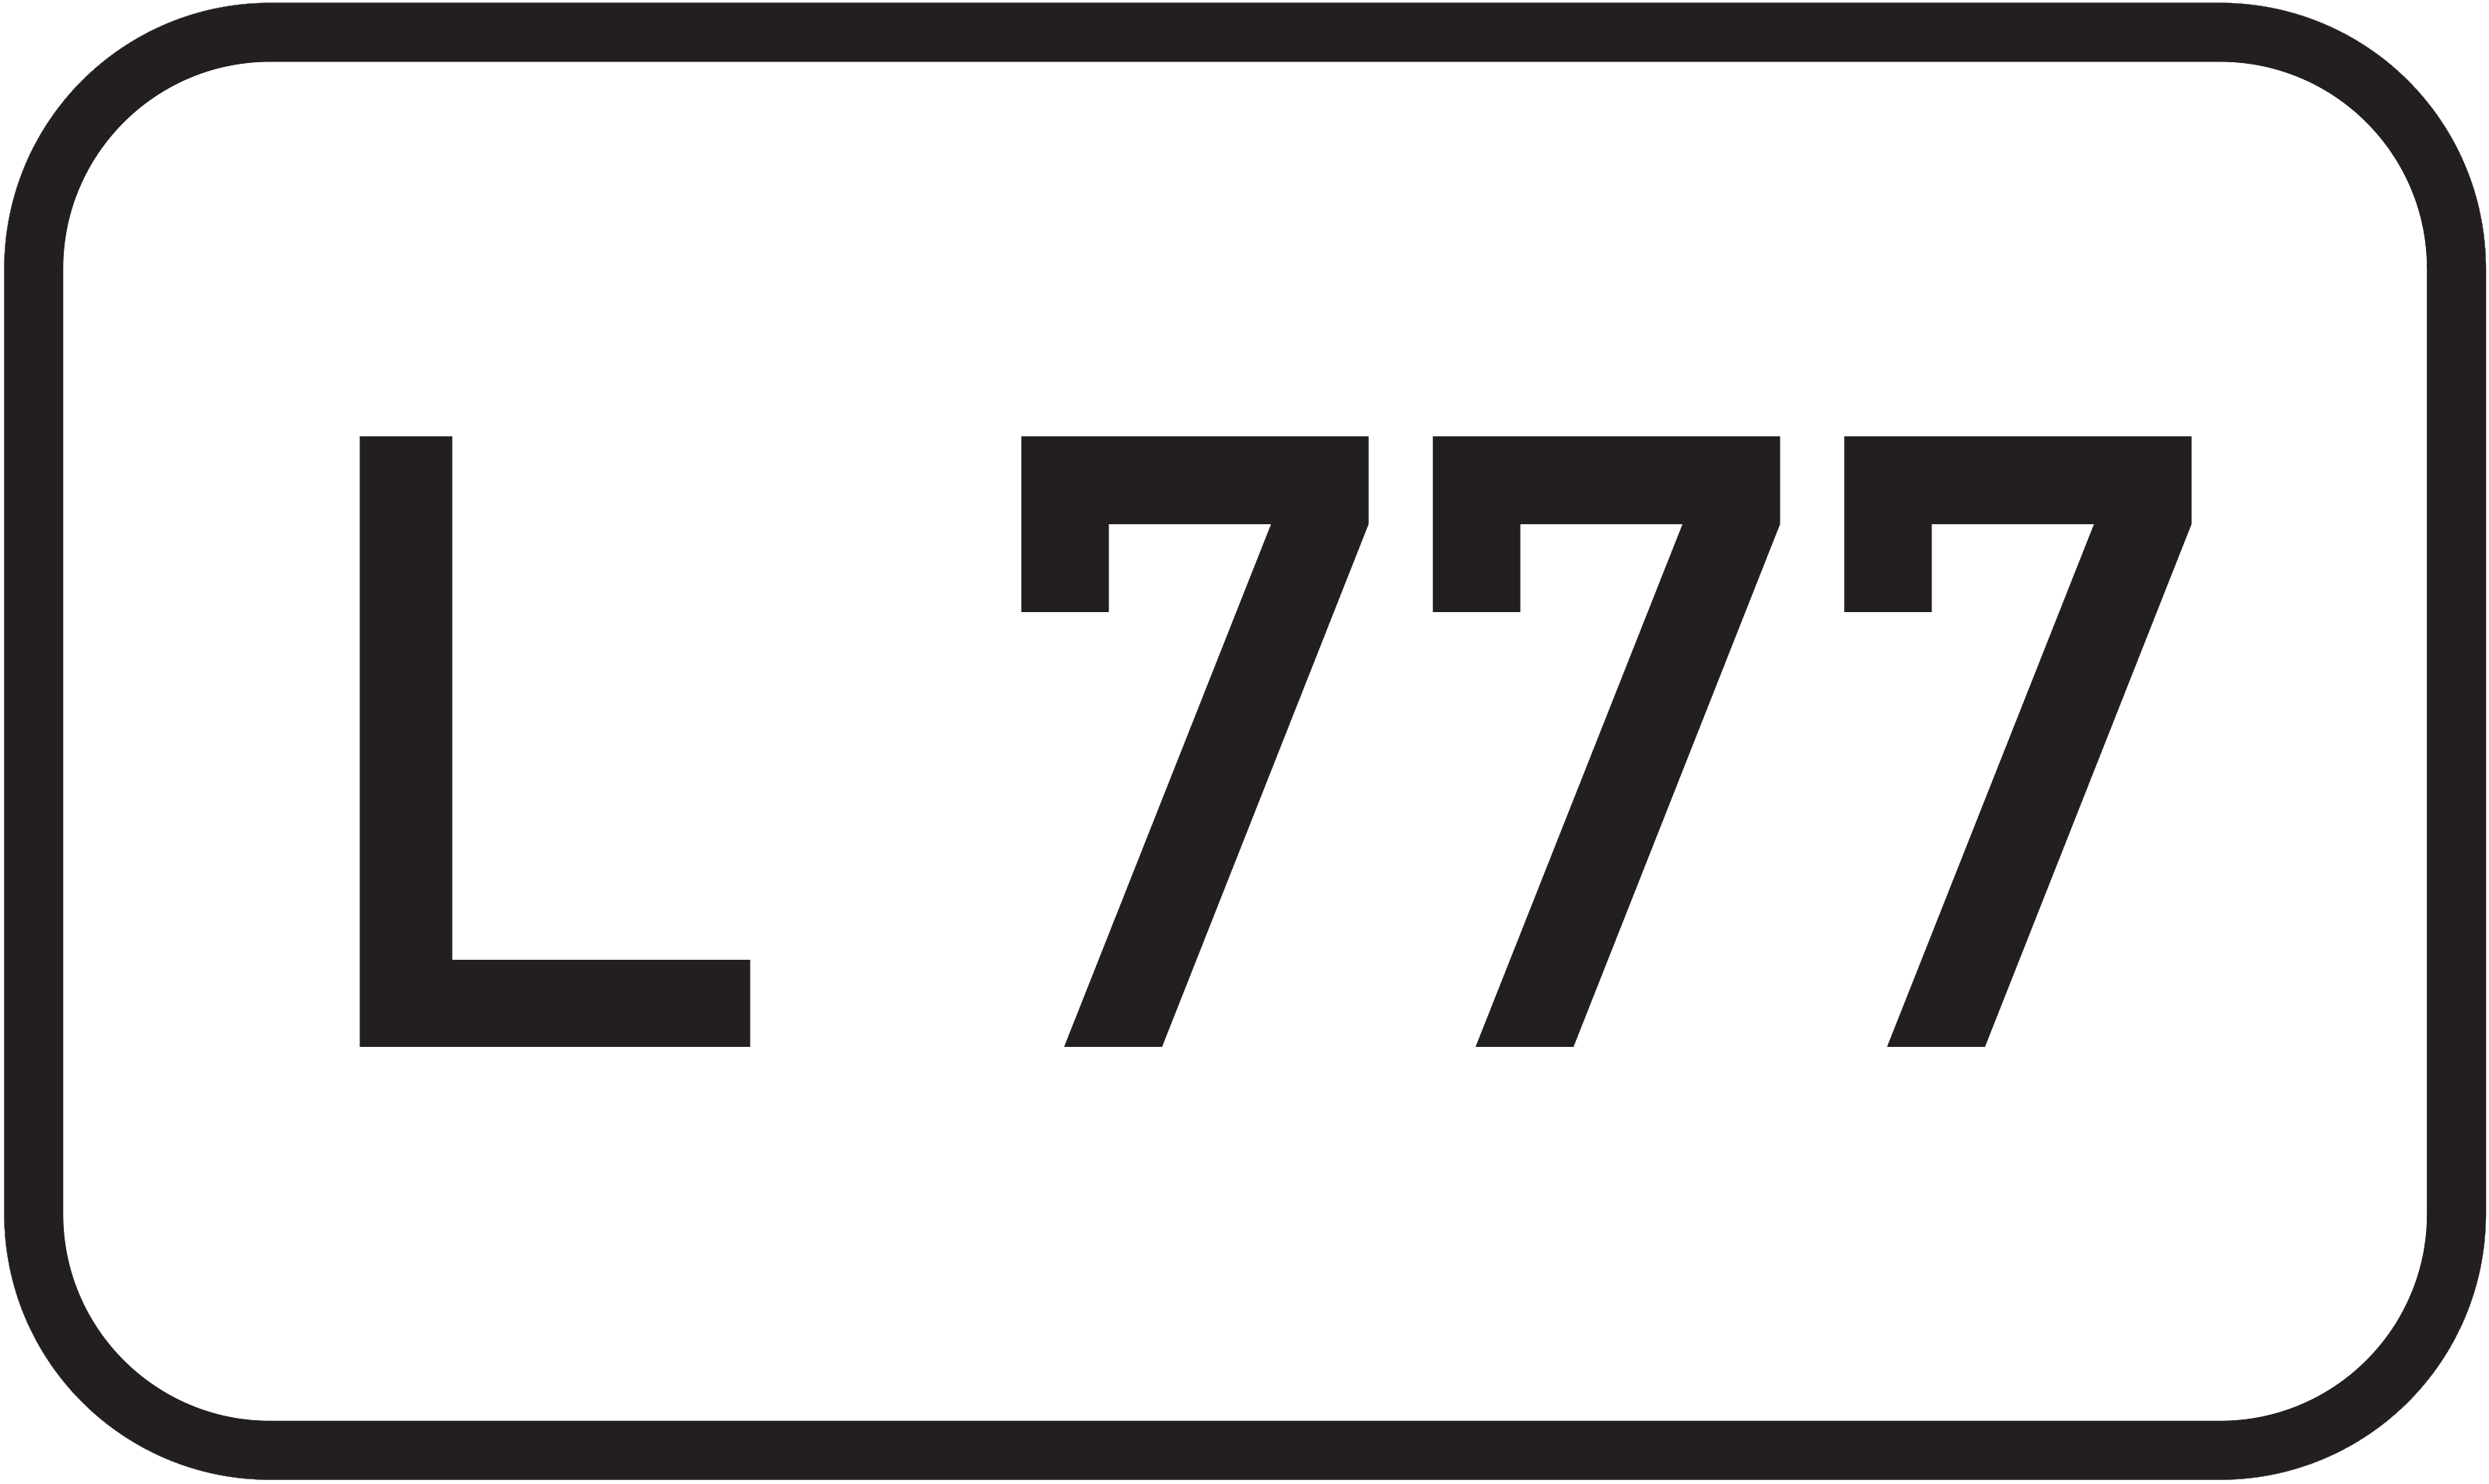 Landesstraße L 777